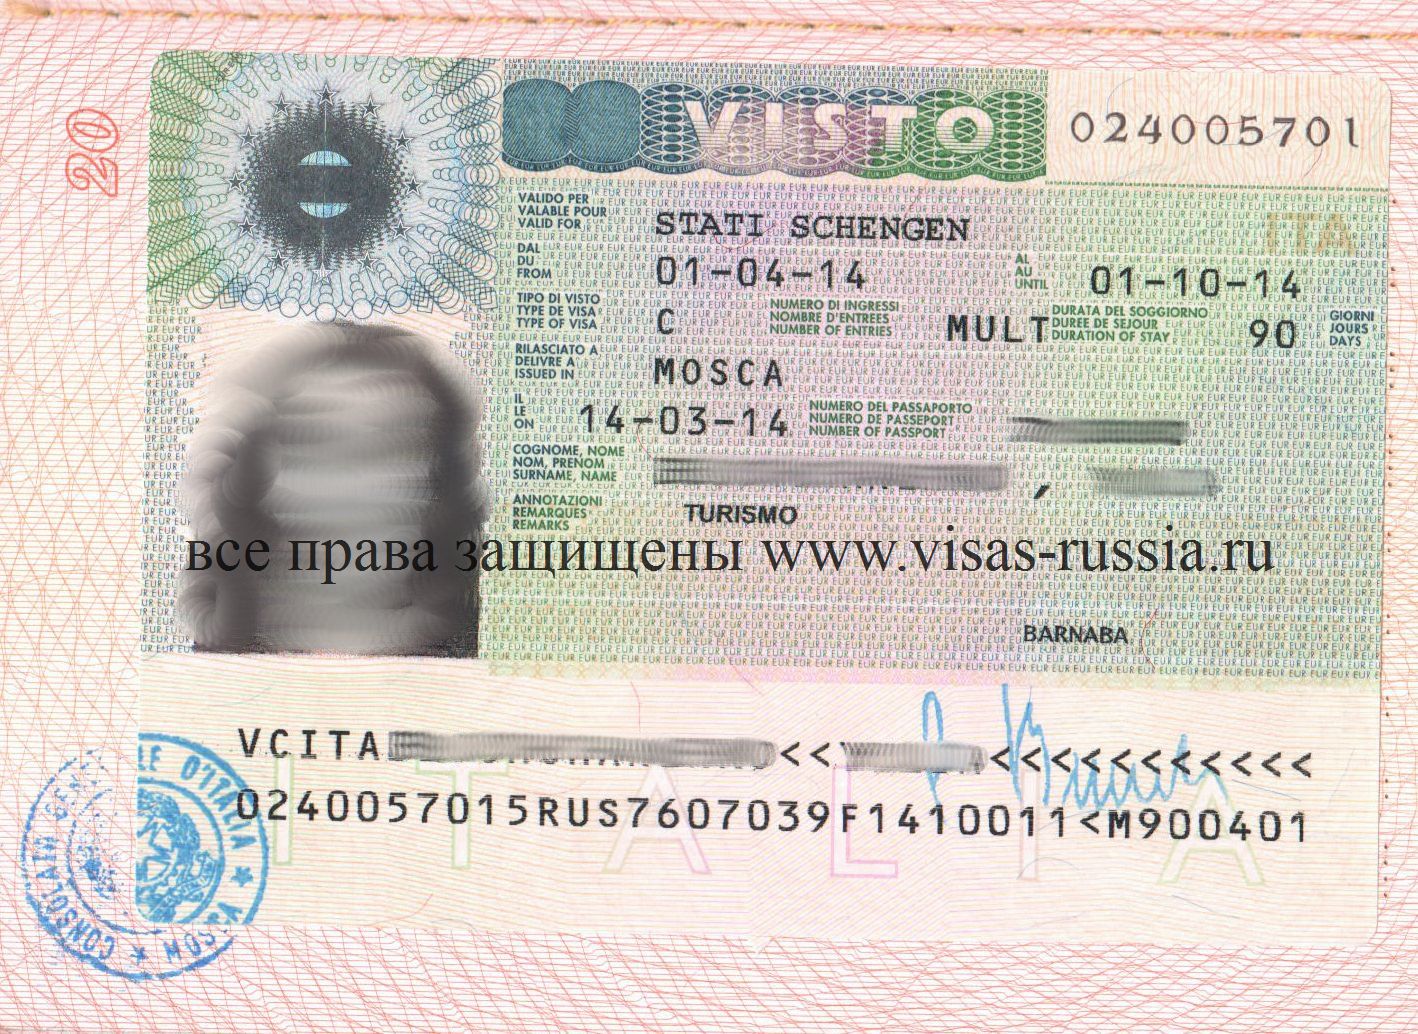 Эквадор для россиян: виза не нужна для путешествий до 3 месяцев